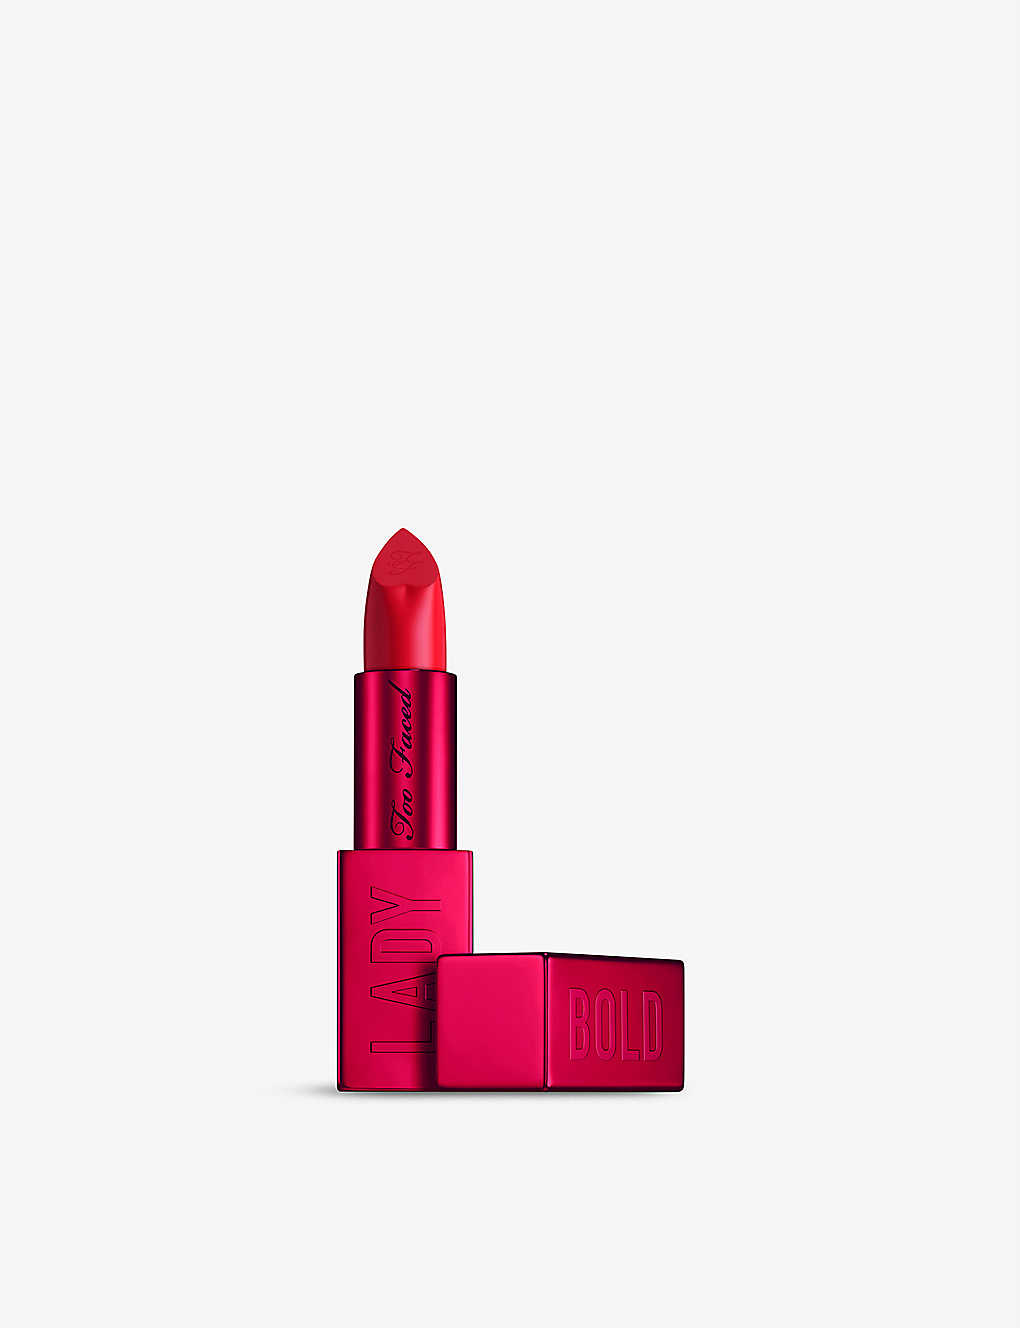 Too Faced Lady Bold Em-power Pigment Cream Lipstick 4g